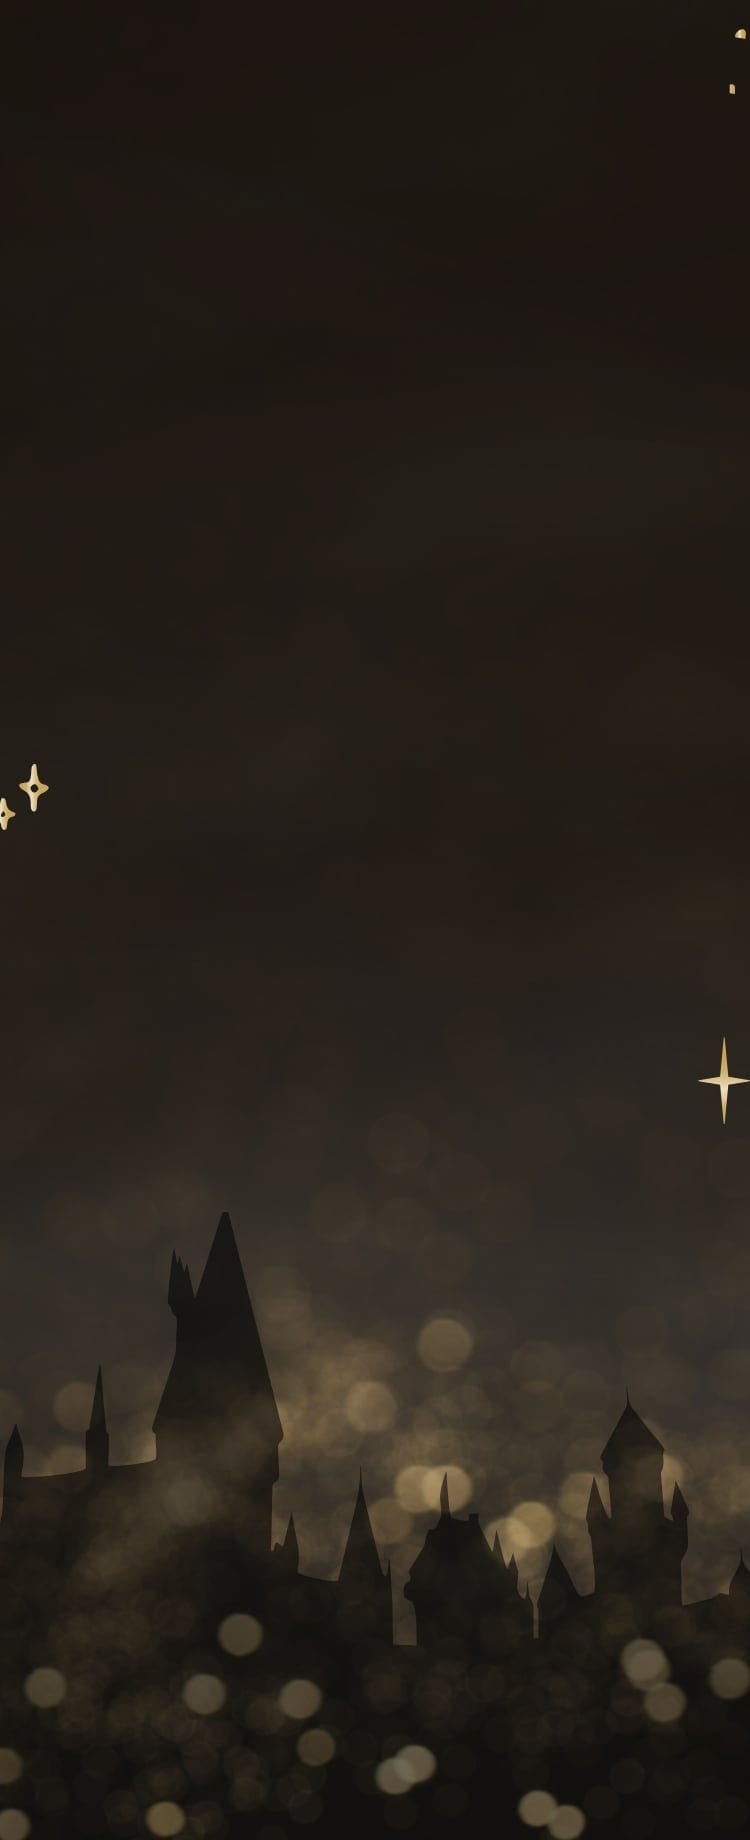 Une image en silhouette du château de Poudlard entouré d’étoiles scintillantes.